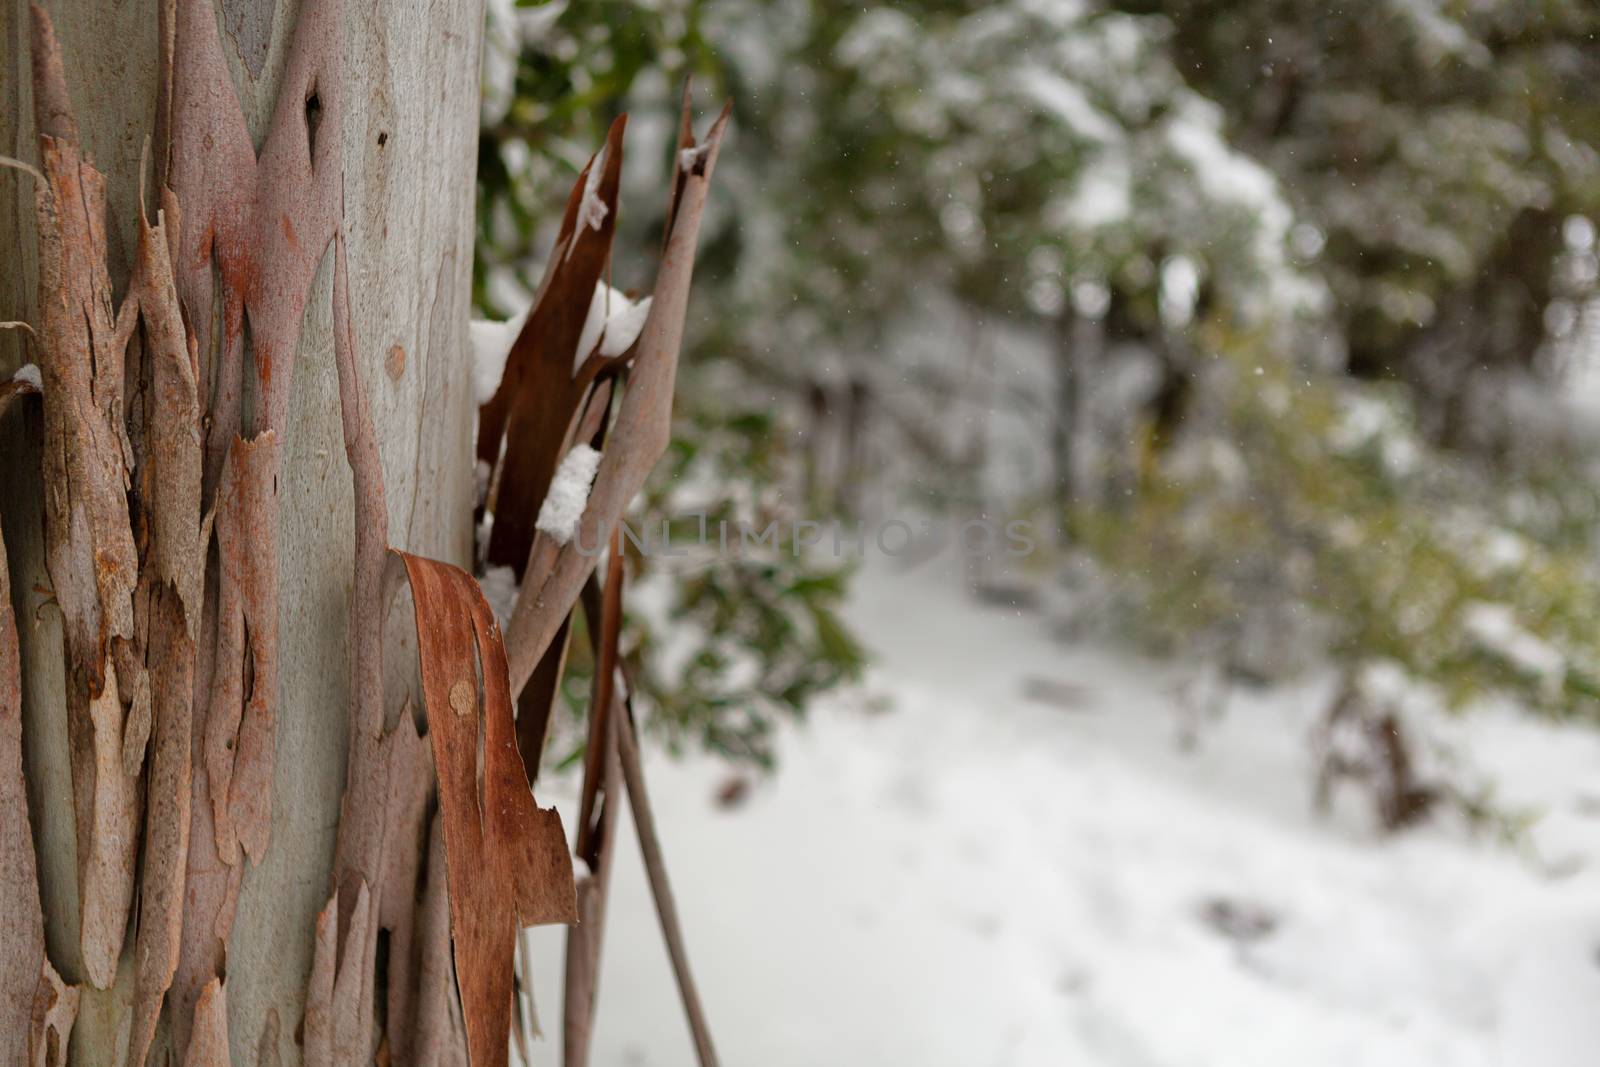 Gum tree bark peeling from trunk in a snowy Australian landscape with snow falling